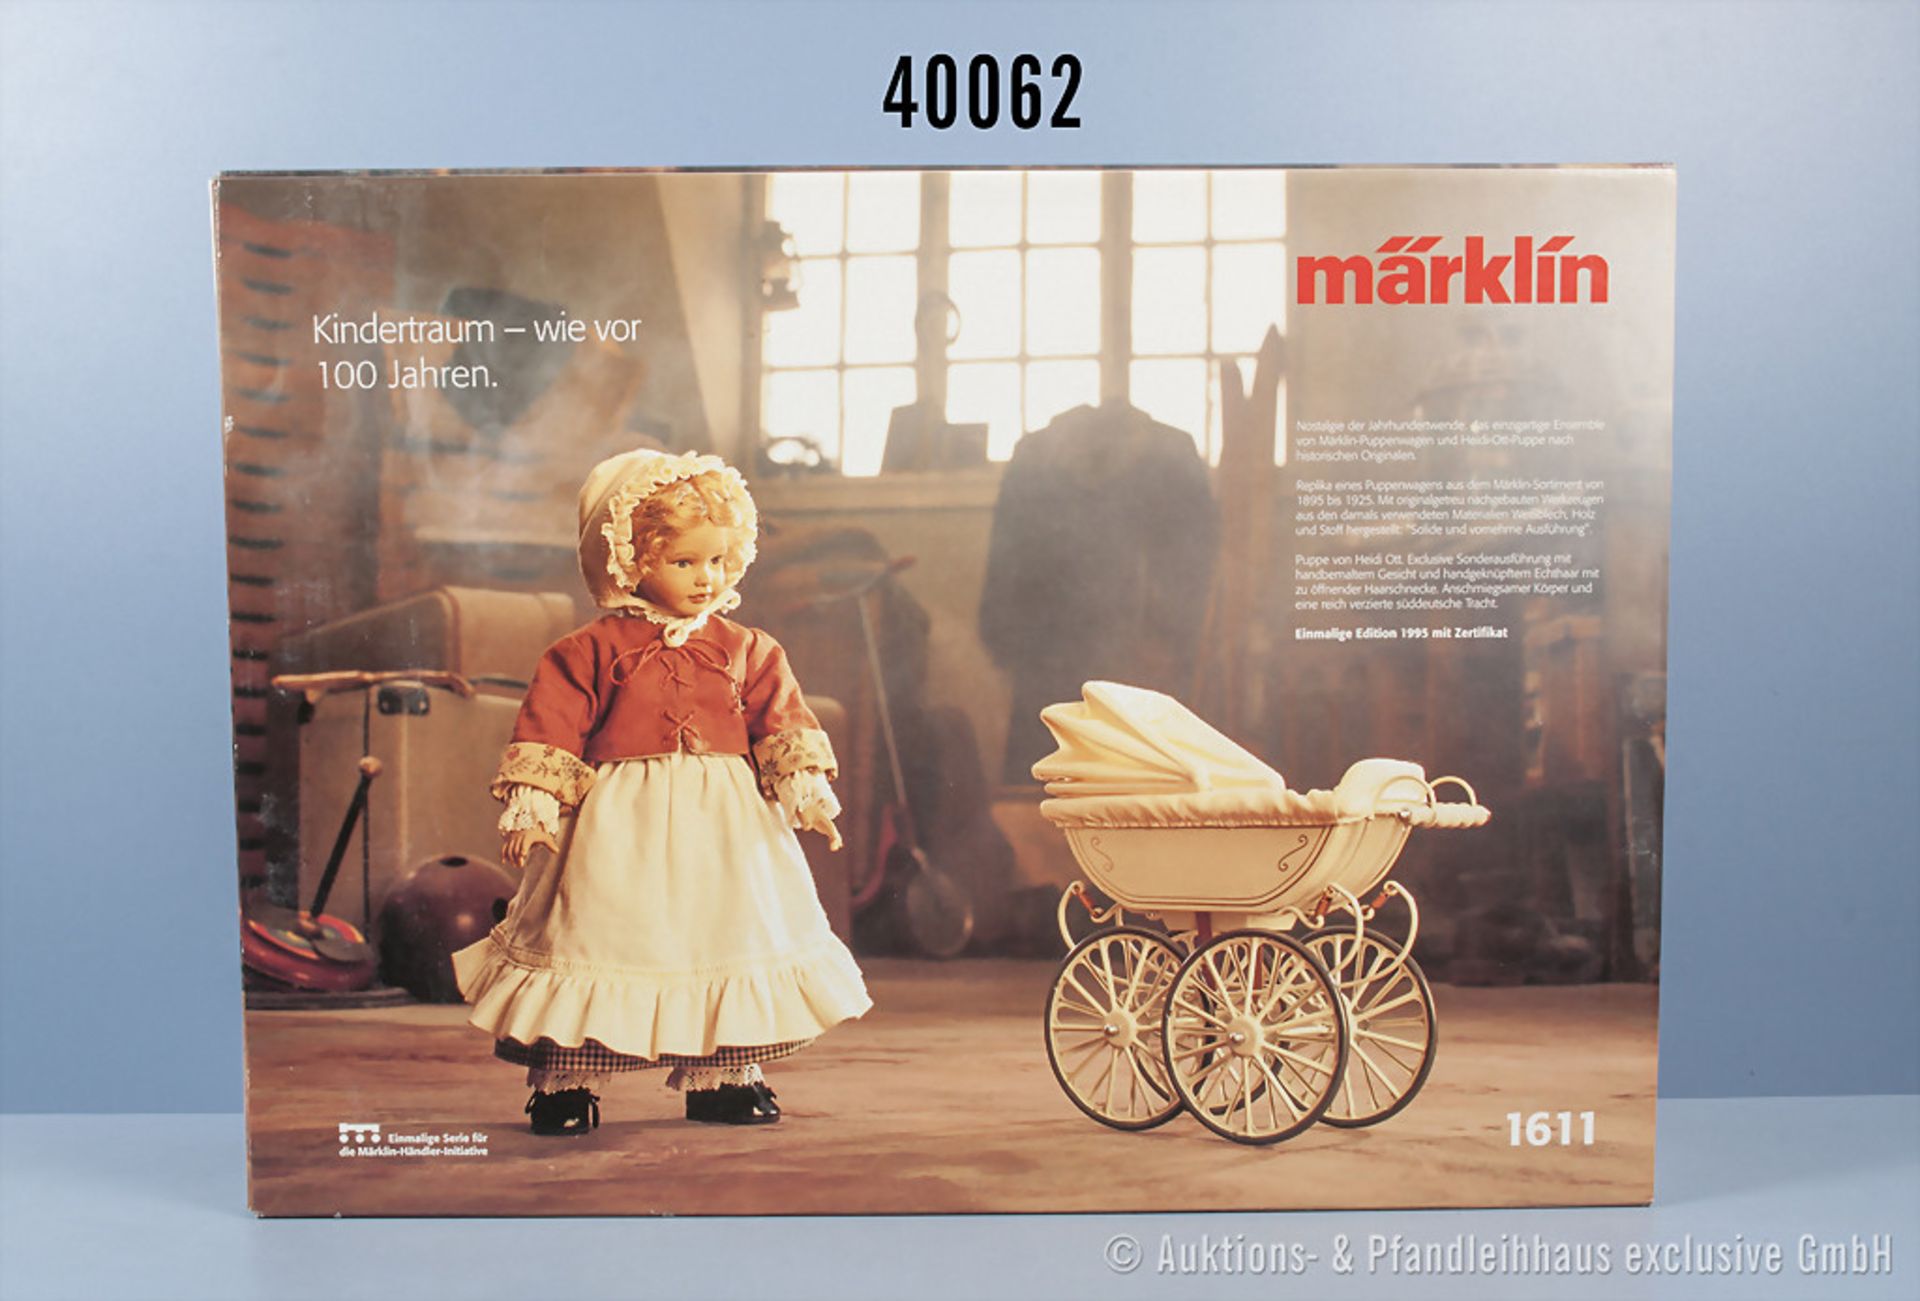 Märklin 1611 Puppenwagen mit Puppe, Replika eines Puppenwagens aus dem Märklin-Sortiment von 1895